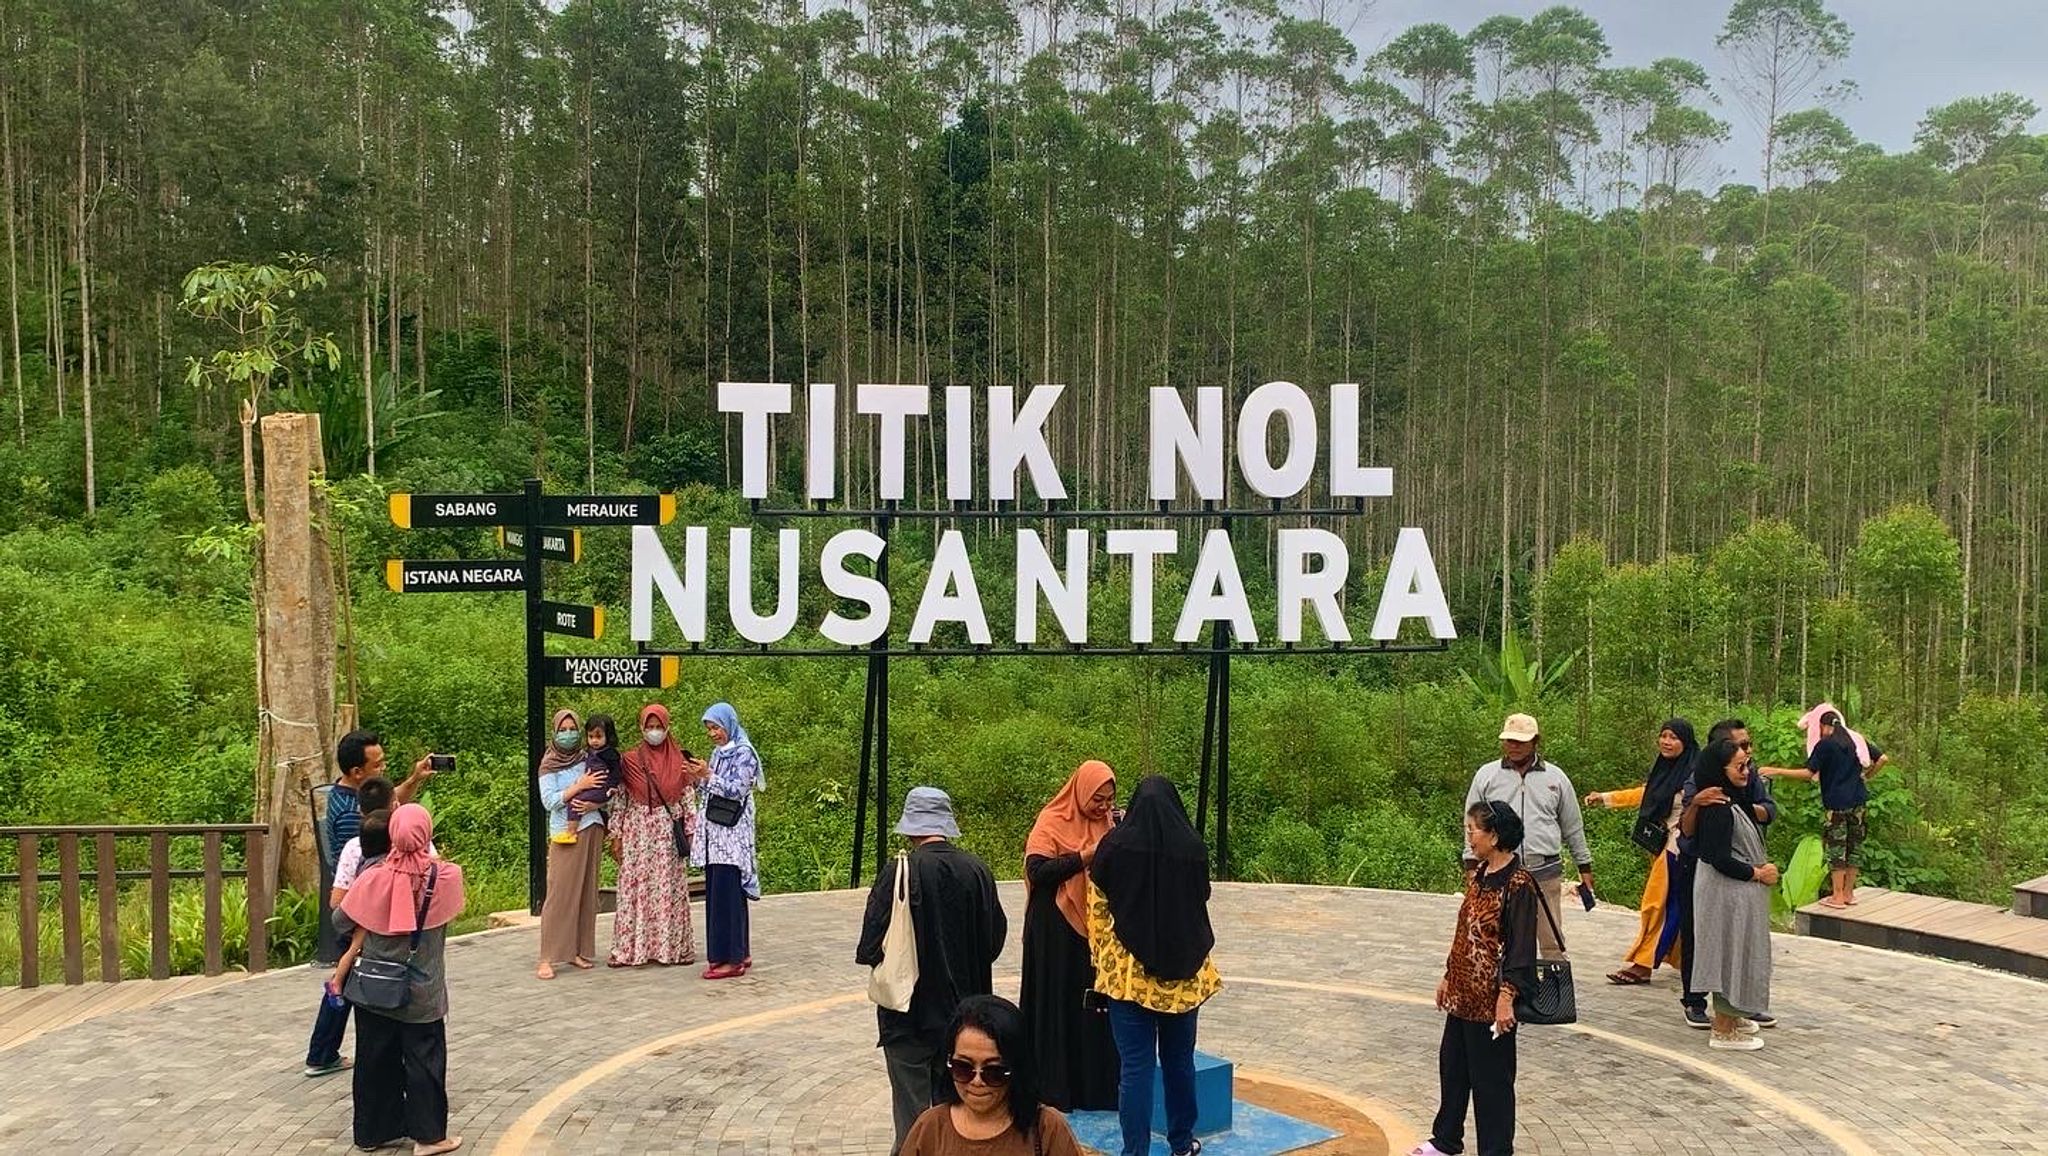 Einheimische besuchen das Gebiet, das als «Nusantara Ground Zero» bezeichnet wird. Hier entsteht gerade Nusantara, die neue Hauptstadt Indonesiens.